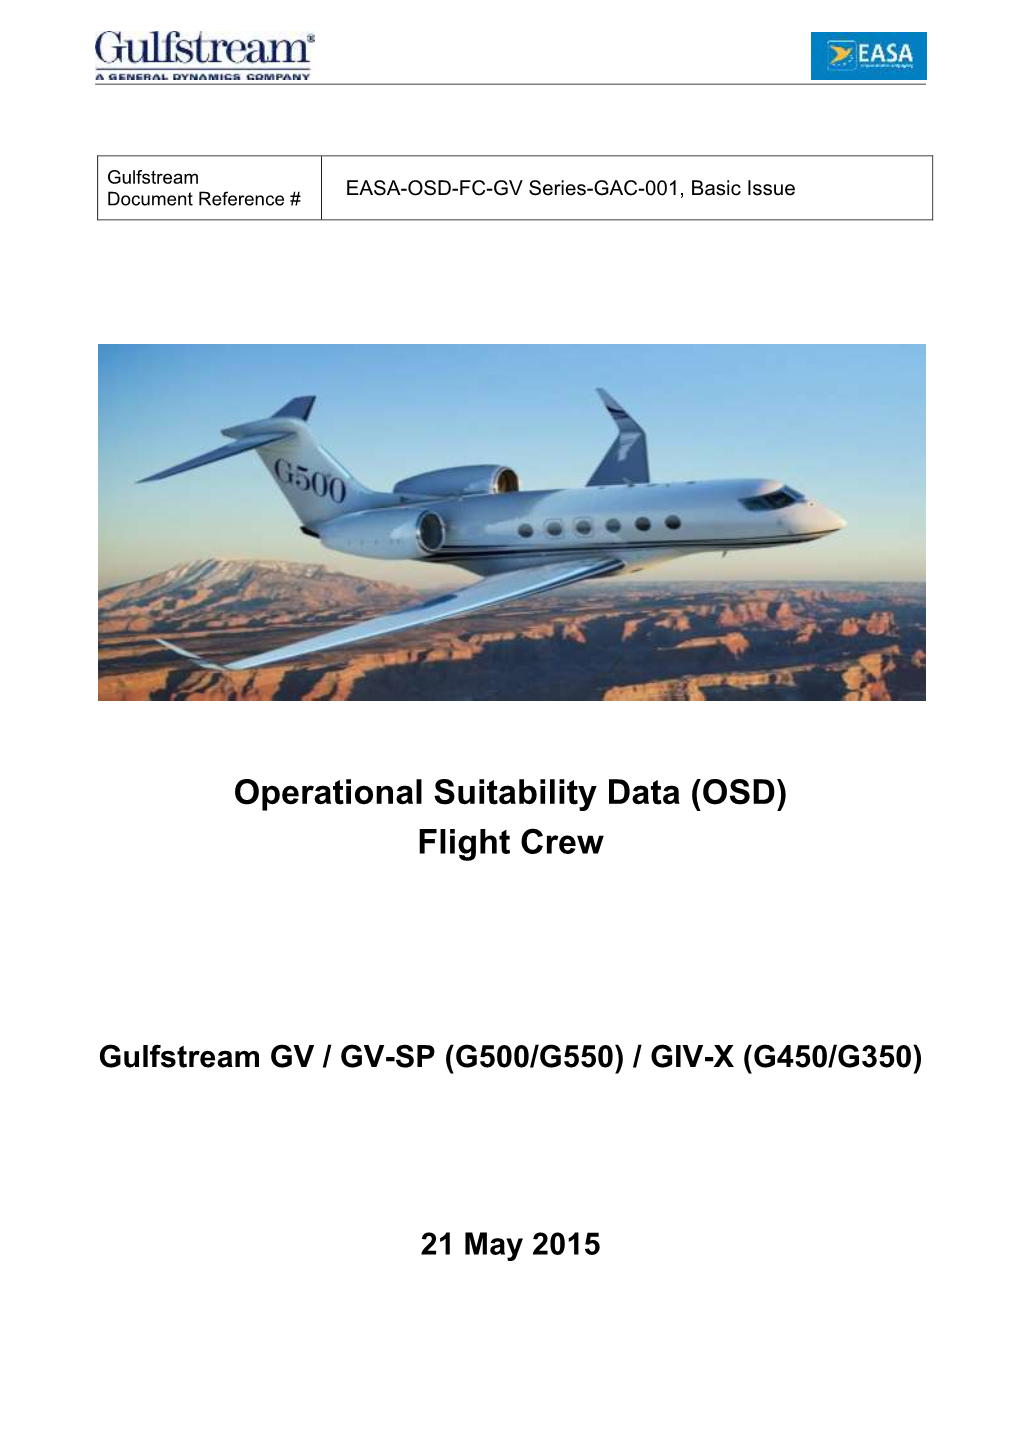 Gulfstream GV / GV-SP (G500/G550) / GIV-X (G450/G350)